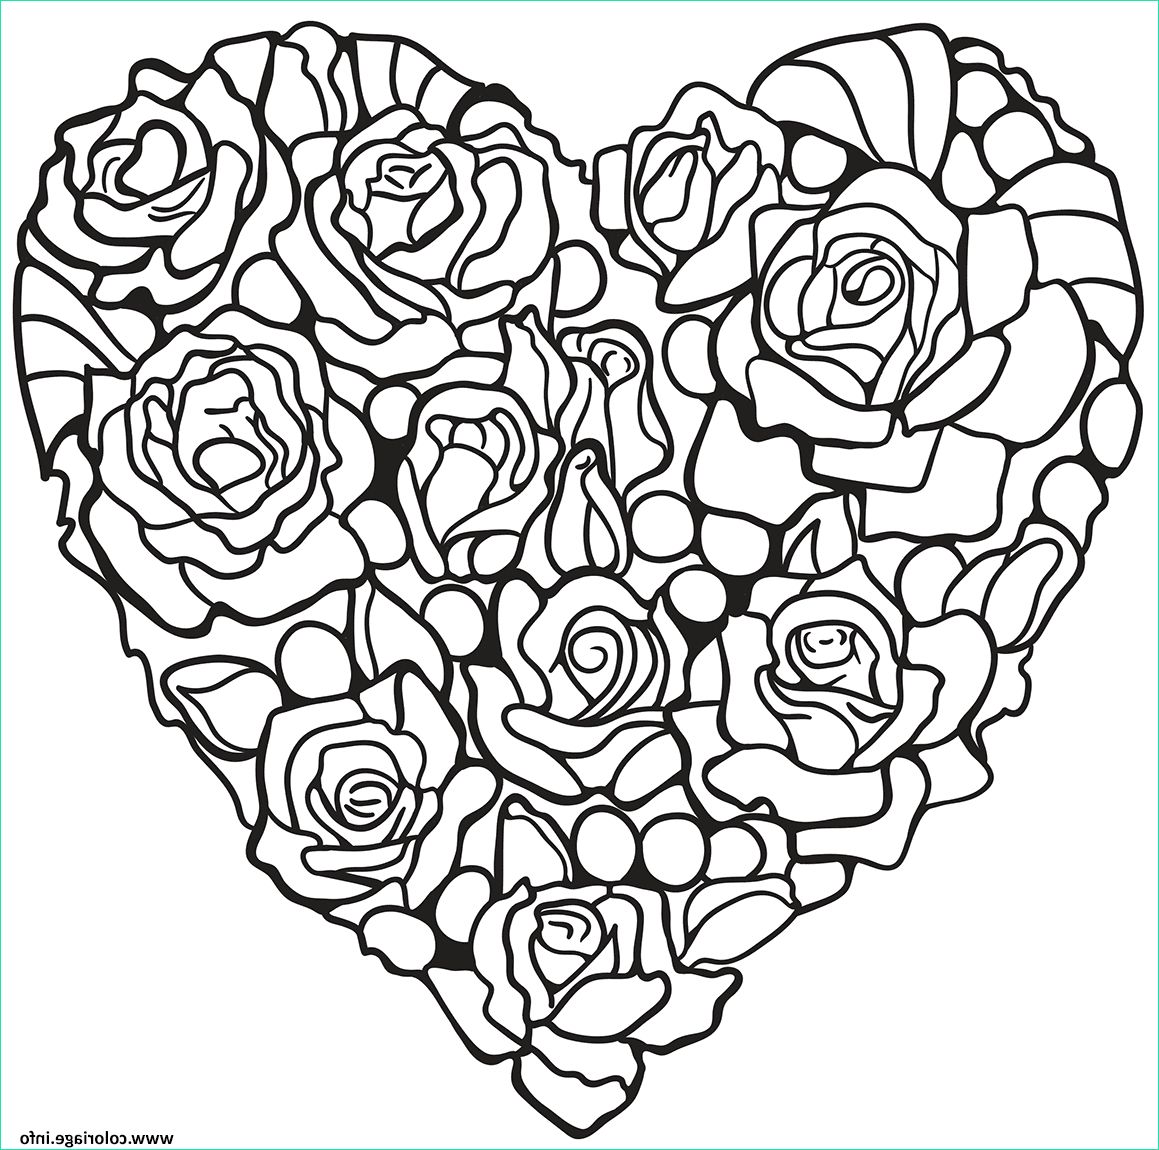 Dessin Coeur A Imprimer Cool Photos Coloriage Roses En forme De Coeur Jecolorie